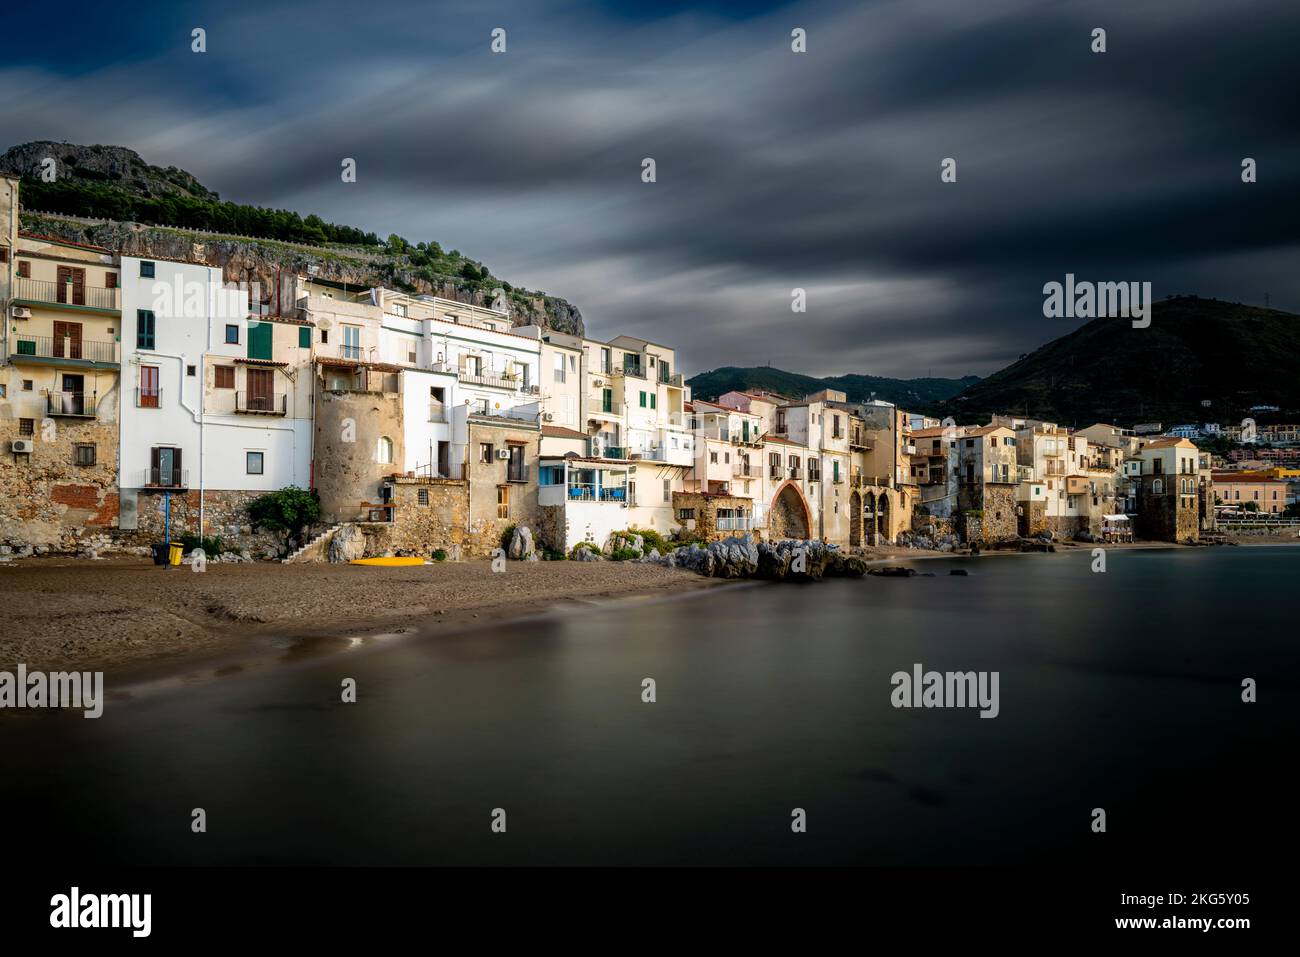 Una veduta della località di Cefalù, Sicilia, Italia. Foto Stock